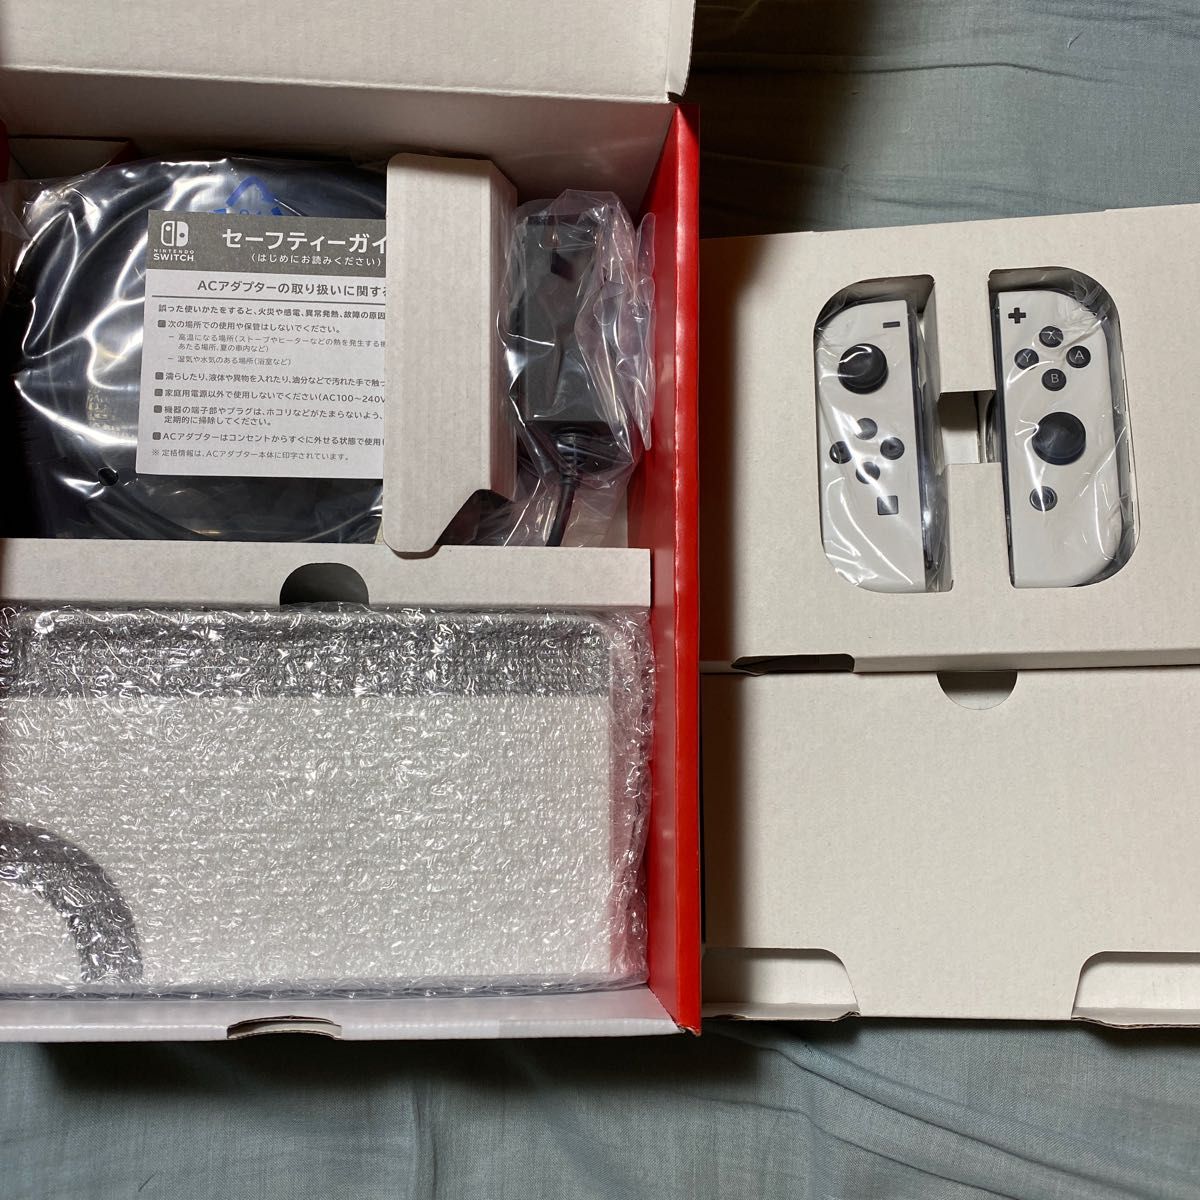 ニンテンドースイッチ 有機ELモデル ホワイト 付属品セット ジョイコン ドック Nintendo Switch 任天堂 13